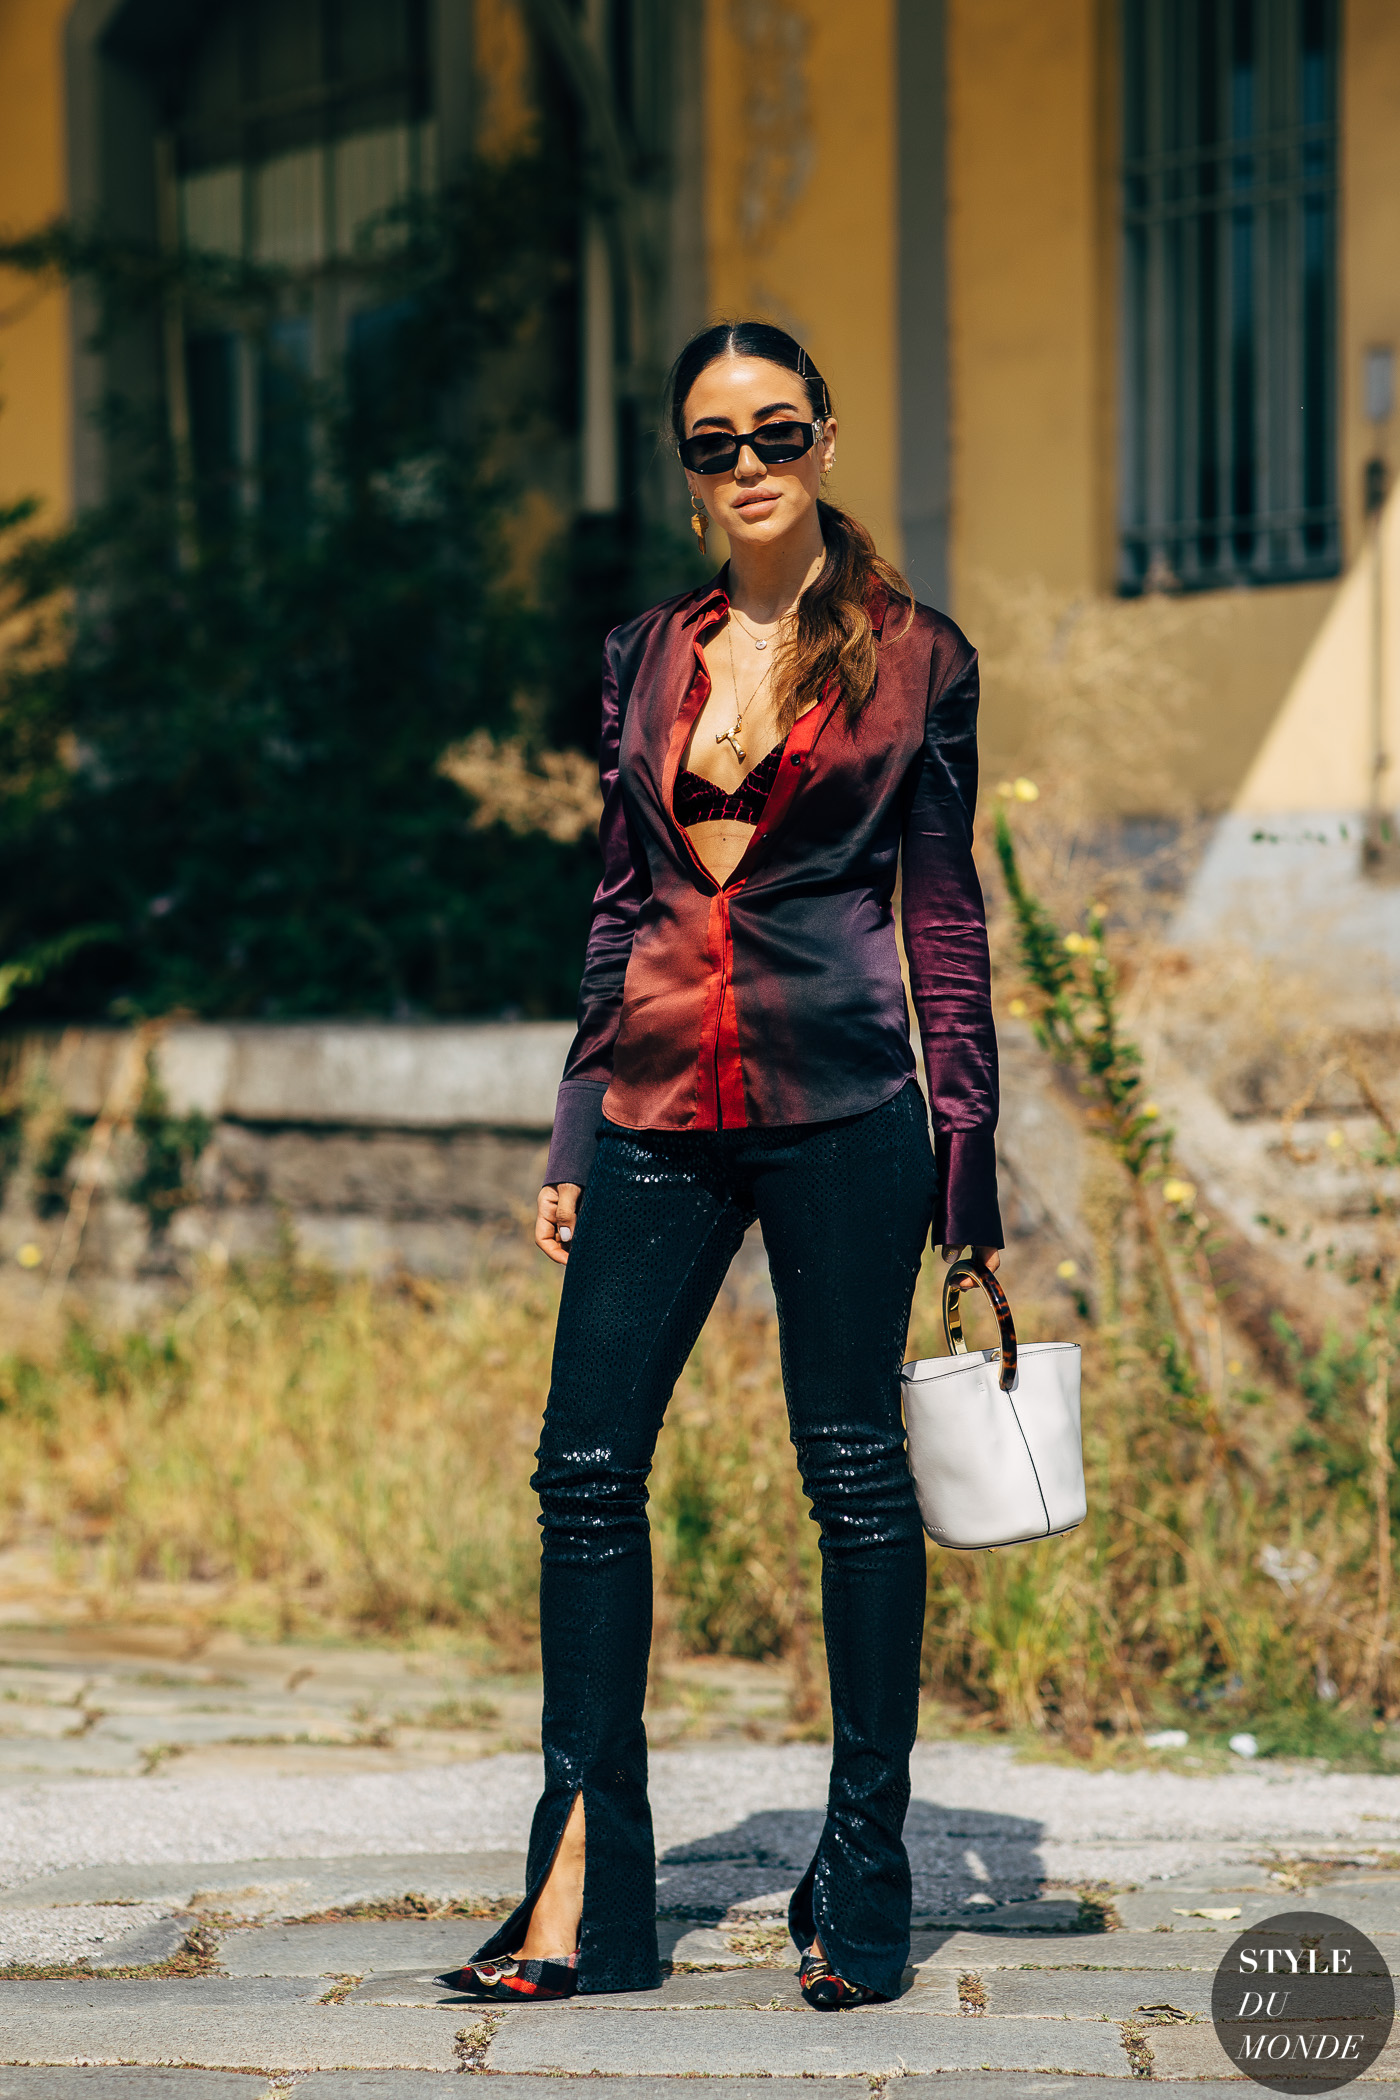 Milan SS 2019 Street Style: Tamara Kalinic - STYLE DU MONDE | Street ...